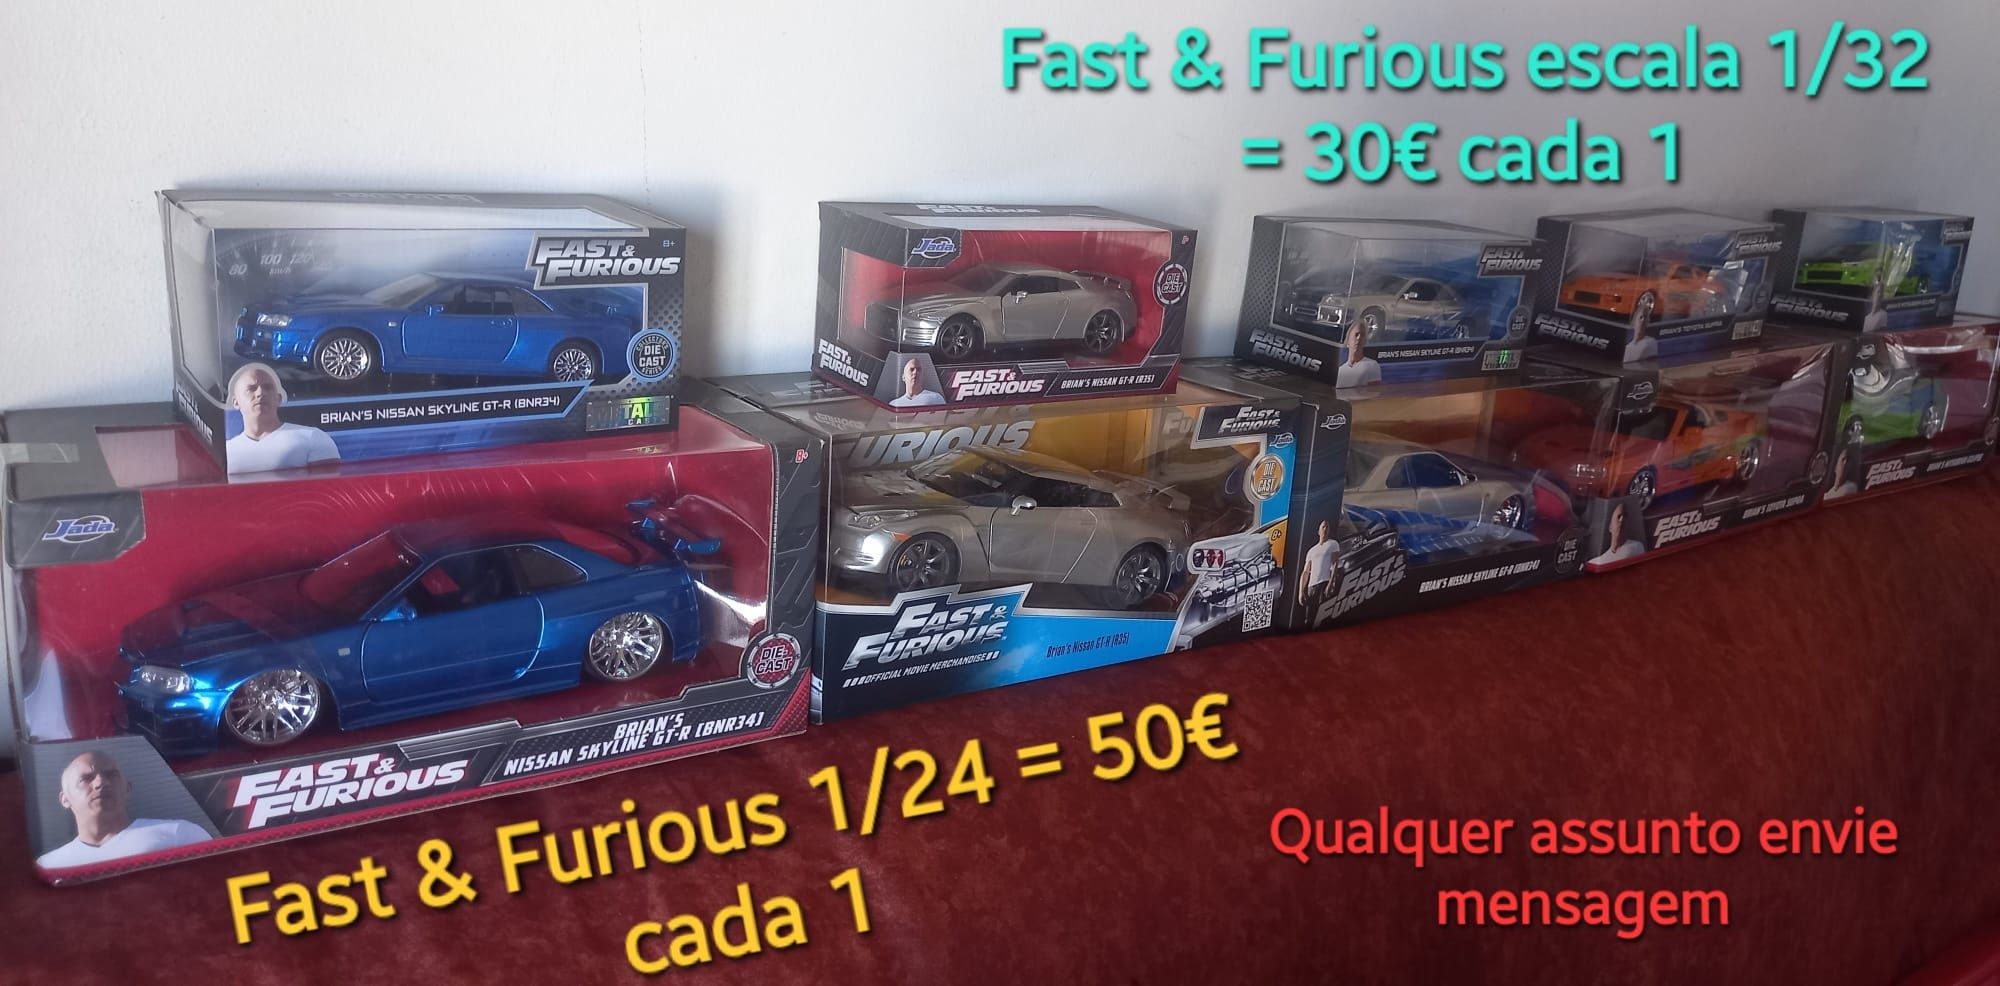 Fast & Furious escala 1/32 e 1/24 novos